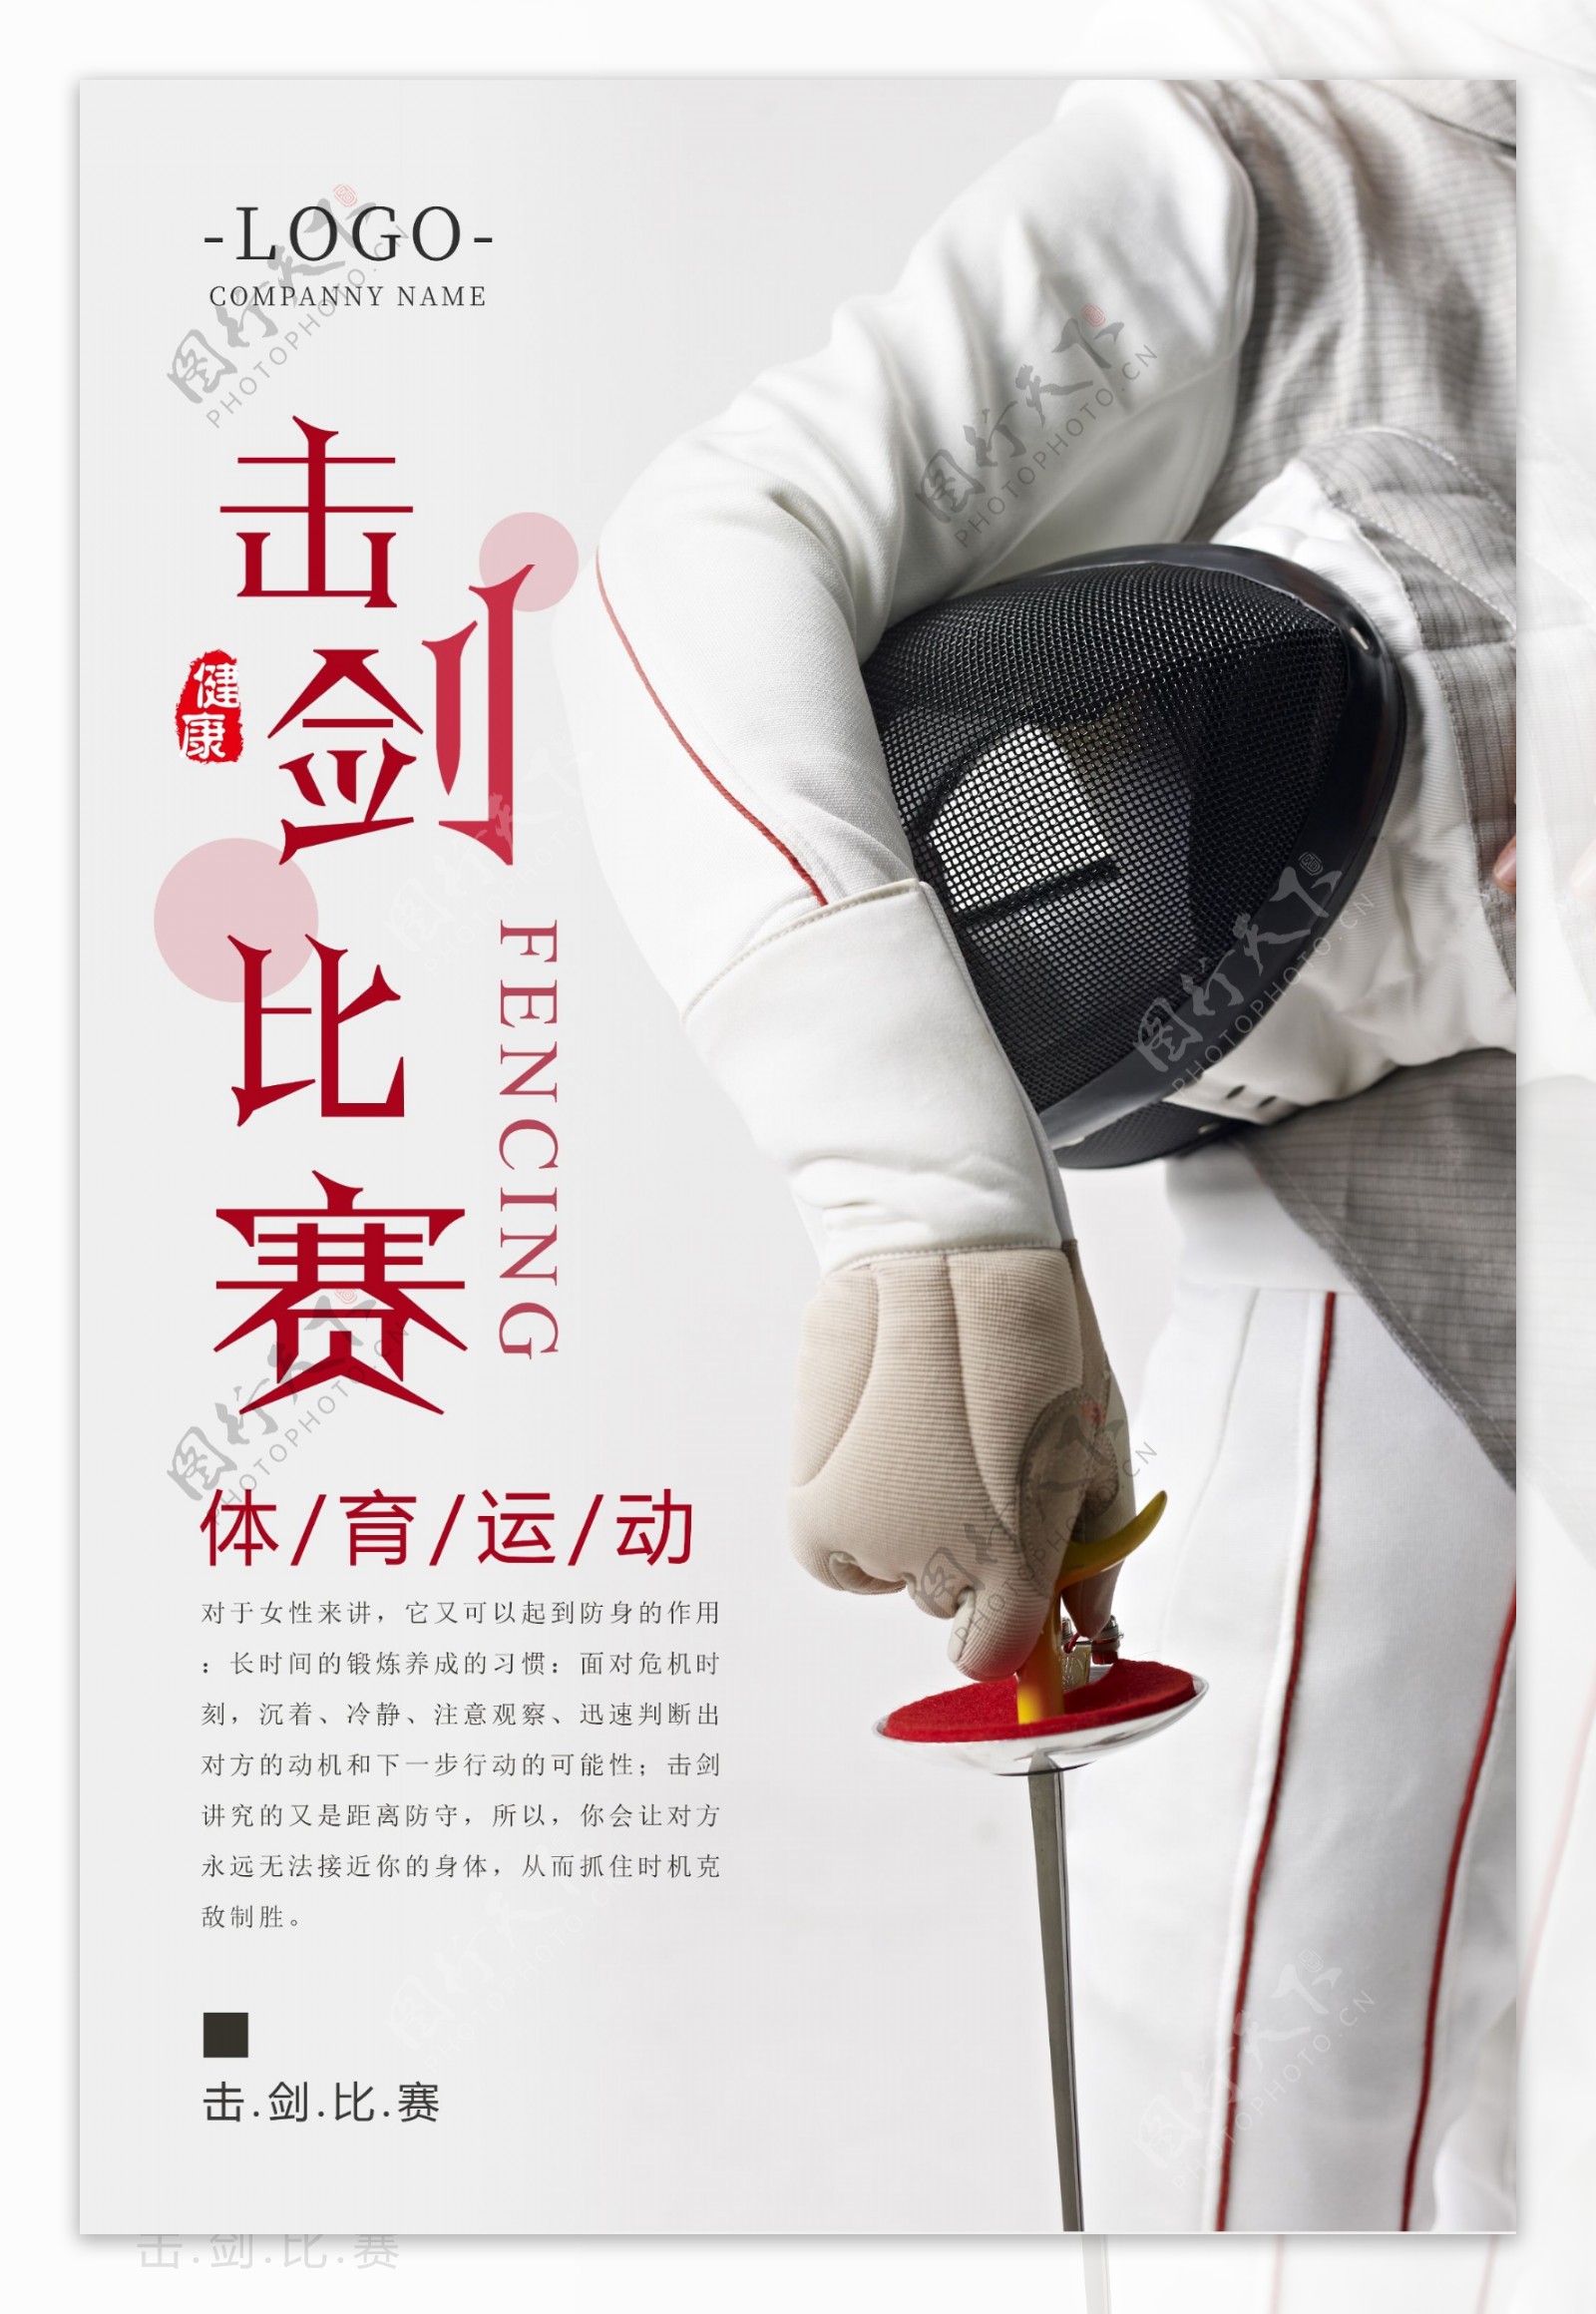 击剑比赛体育运动海报设计